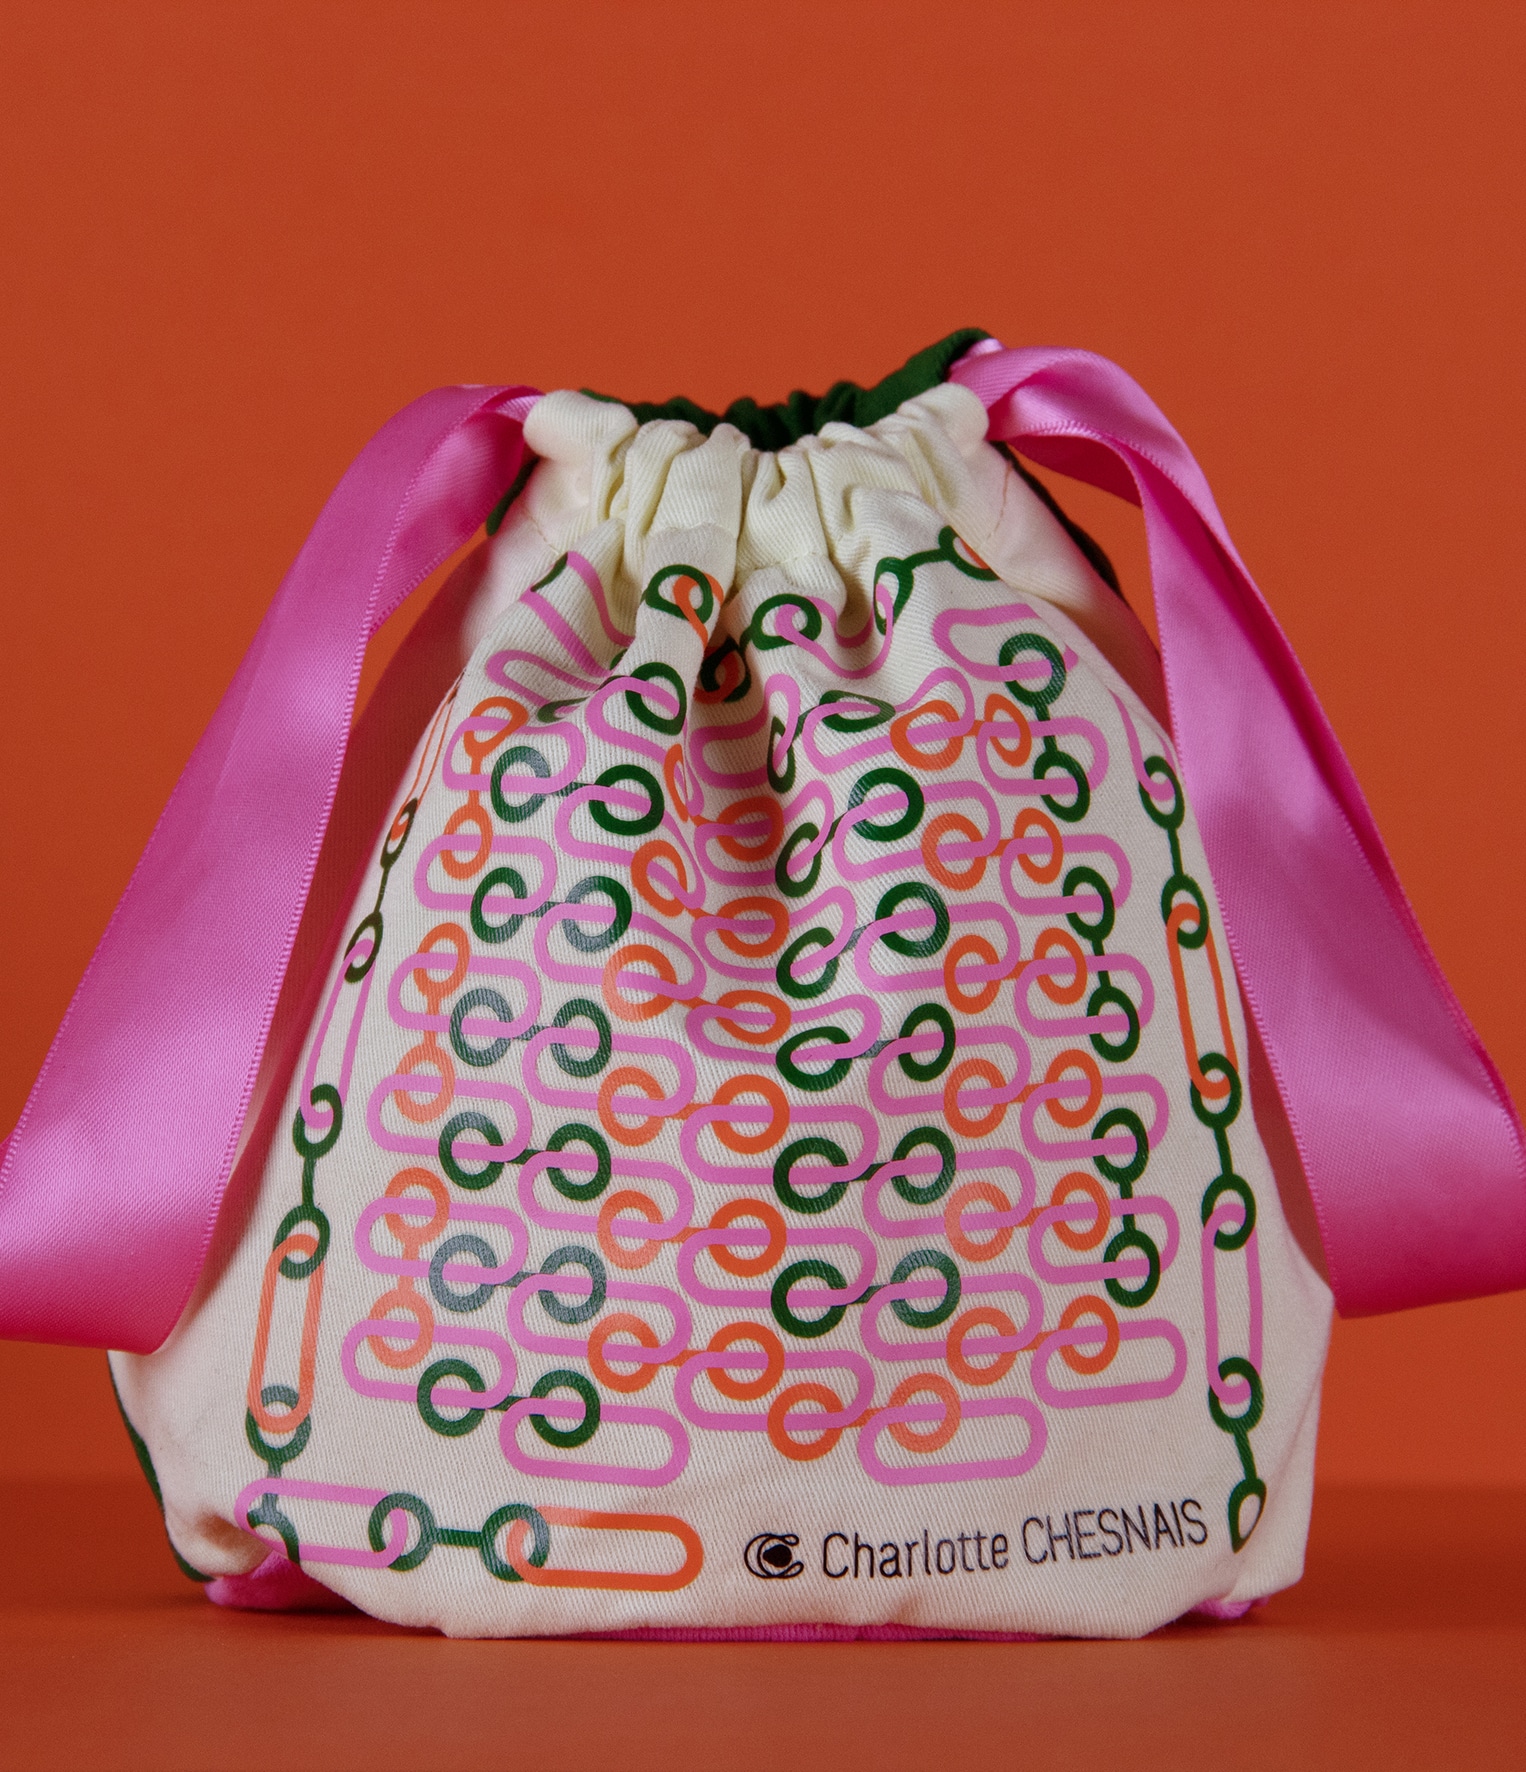 Pochon Charlotte Chesnais avec sérigraphie couleurs vives et ruban rose pour la collection noël 2021.